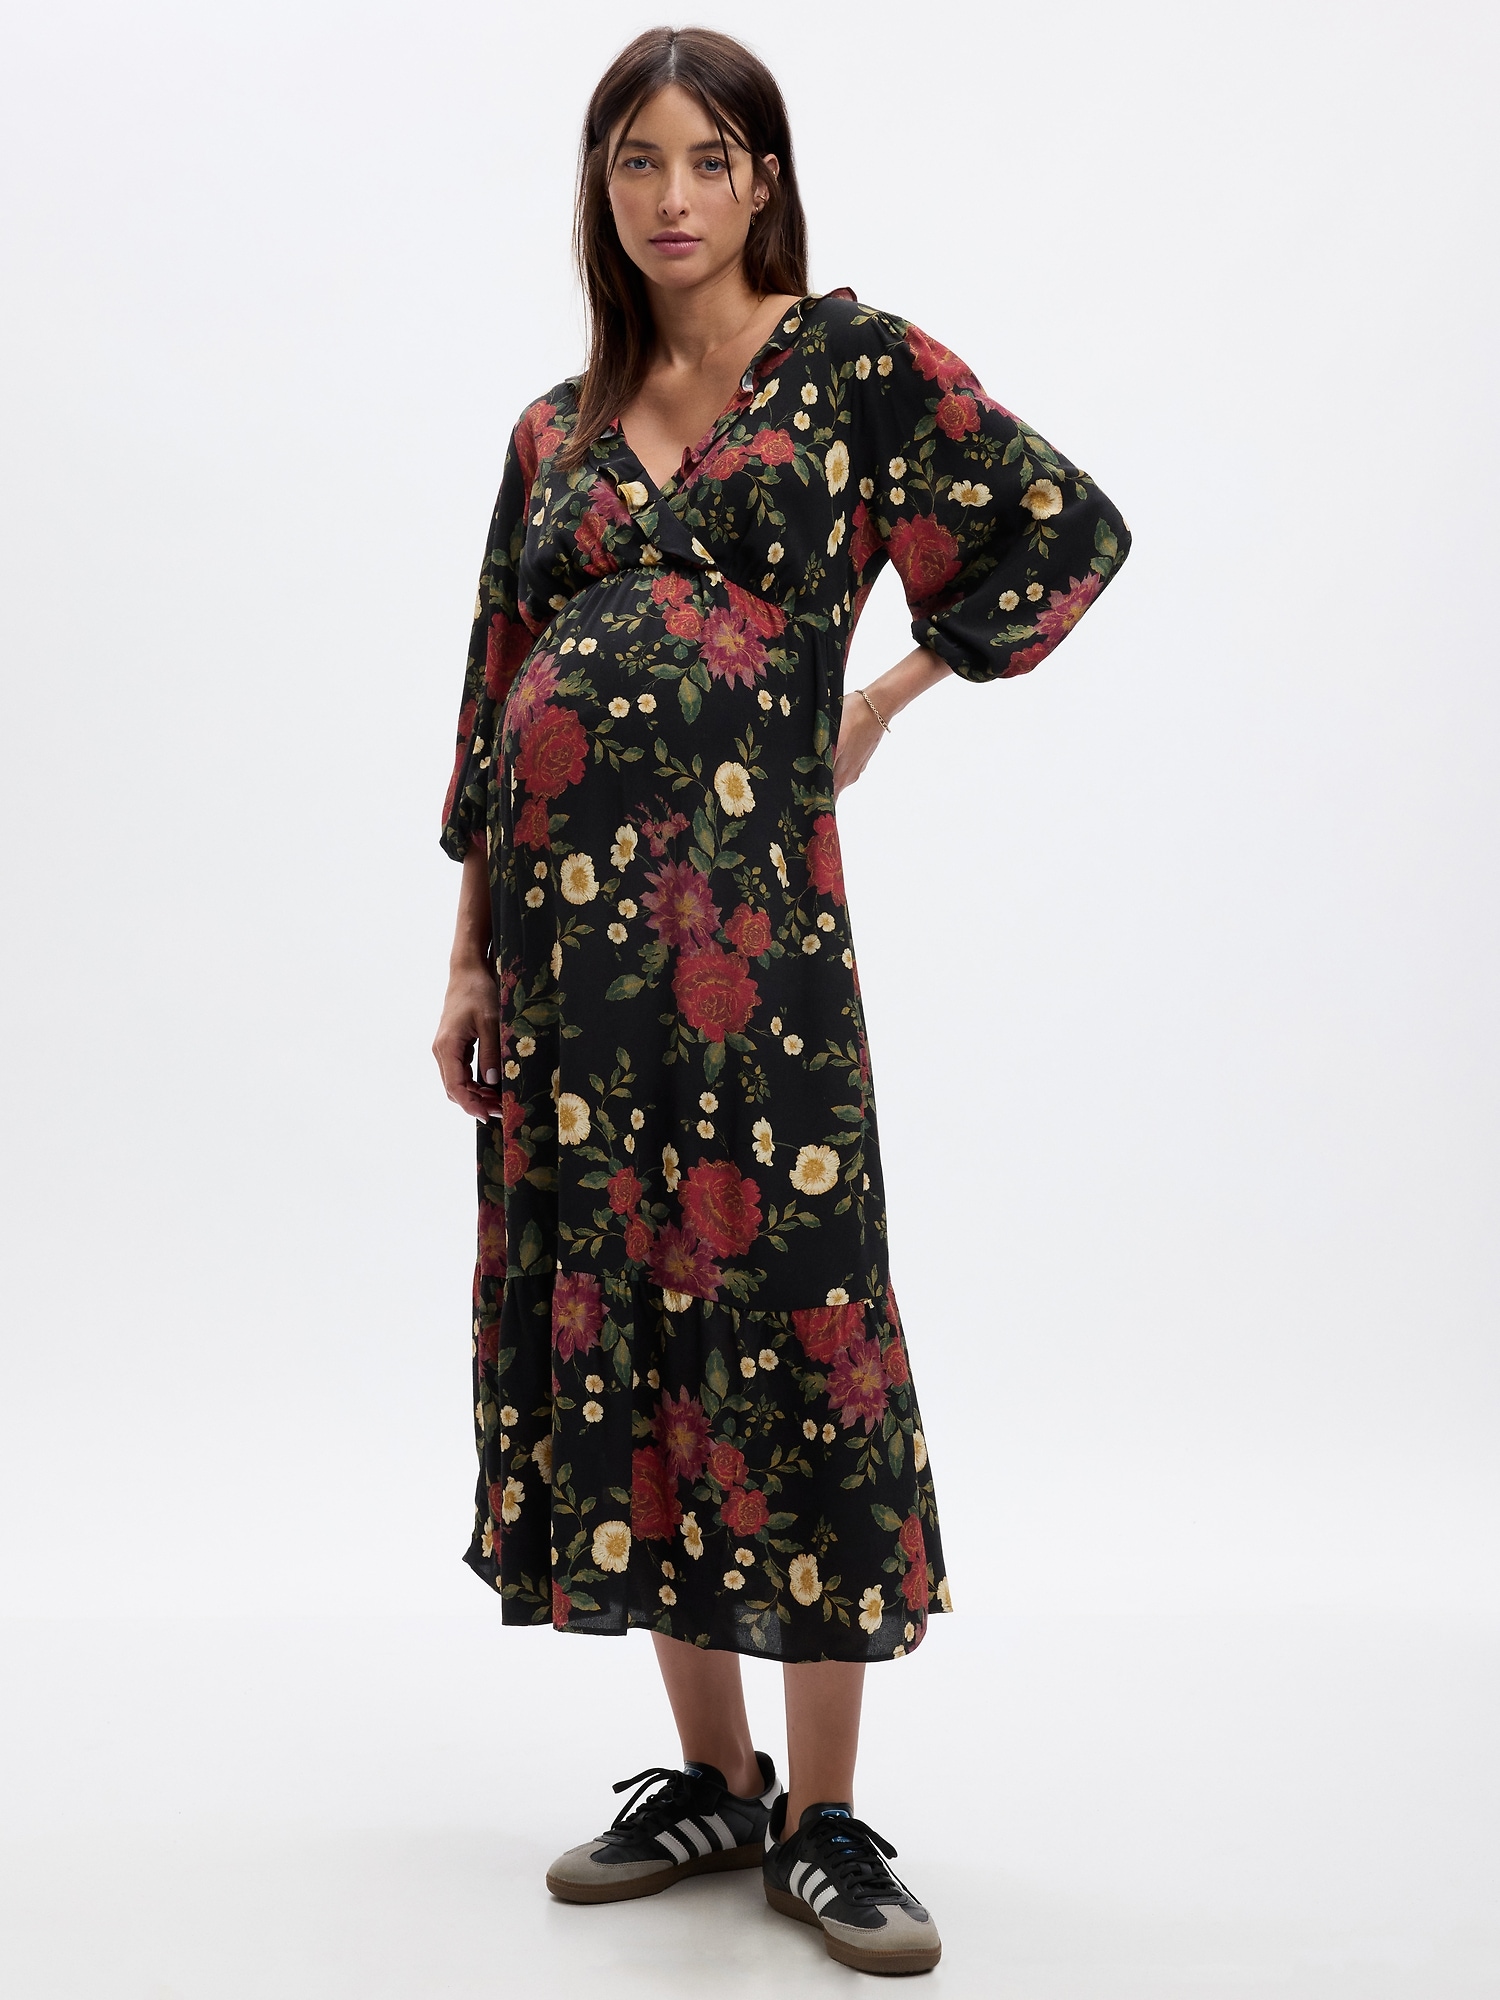 Gap Maternity Dress